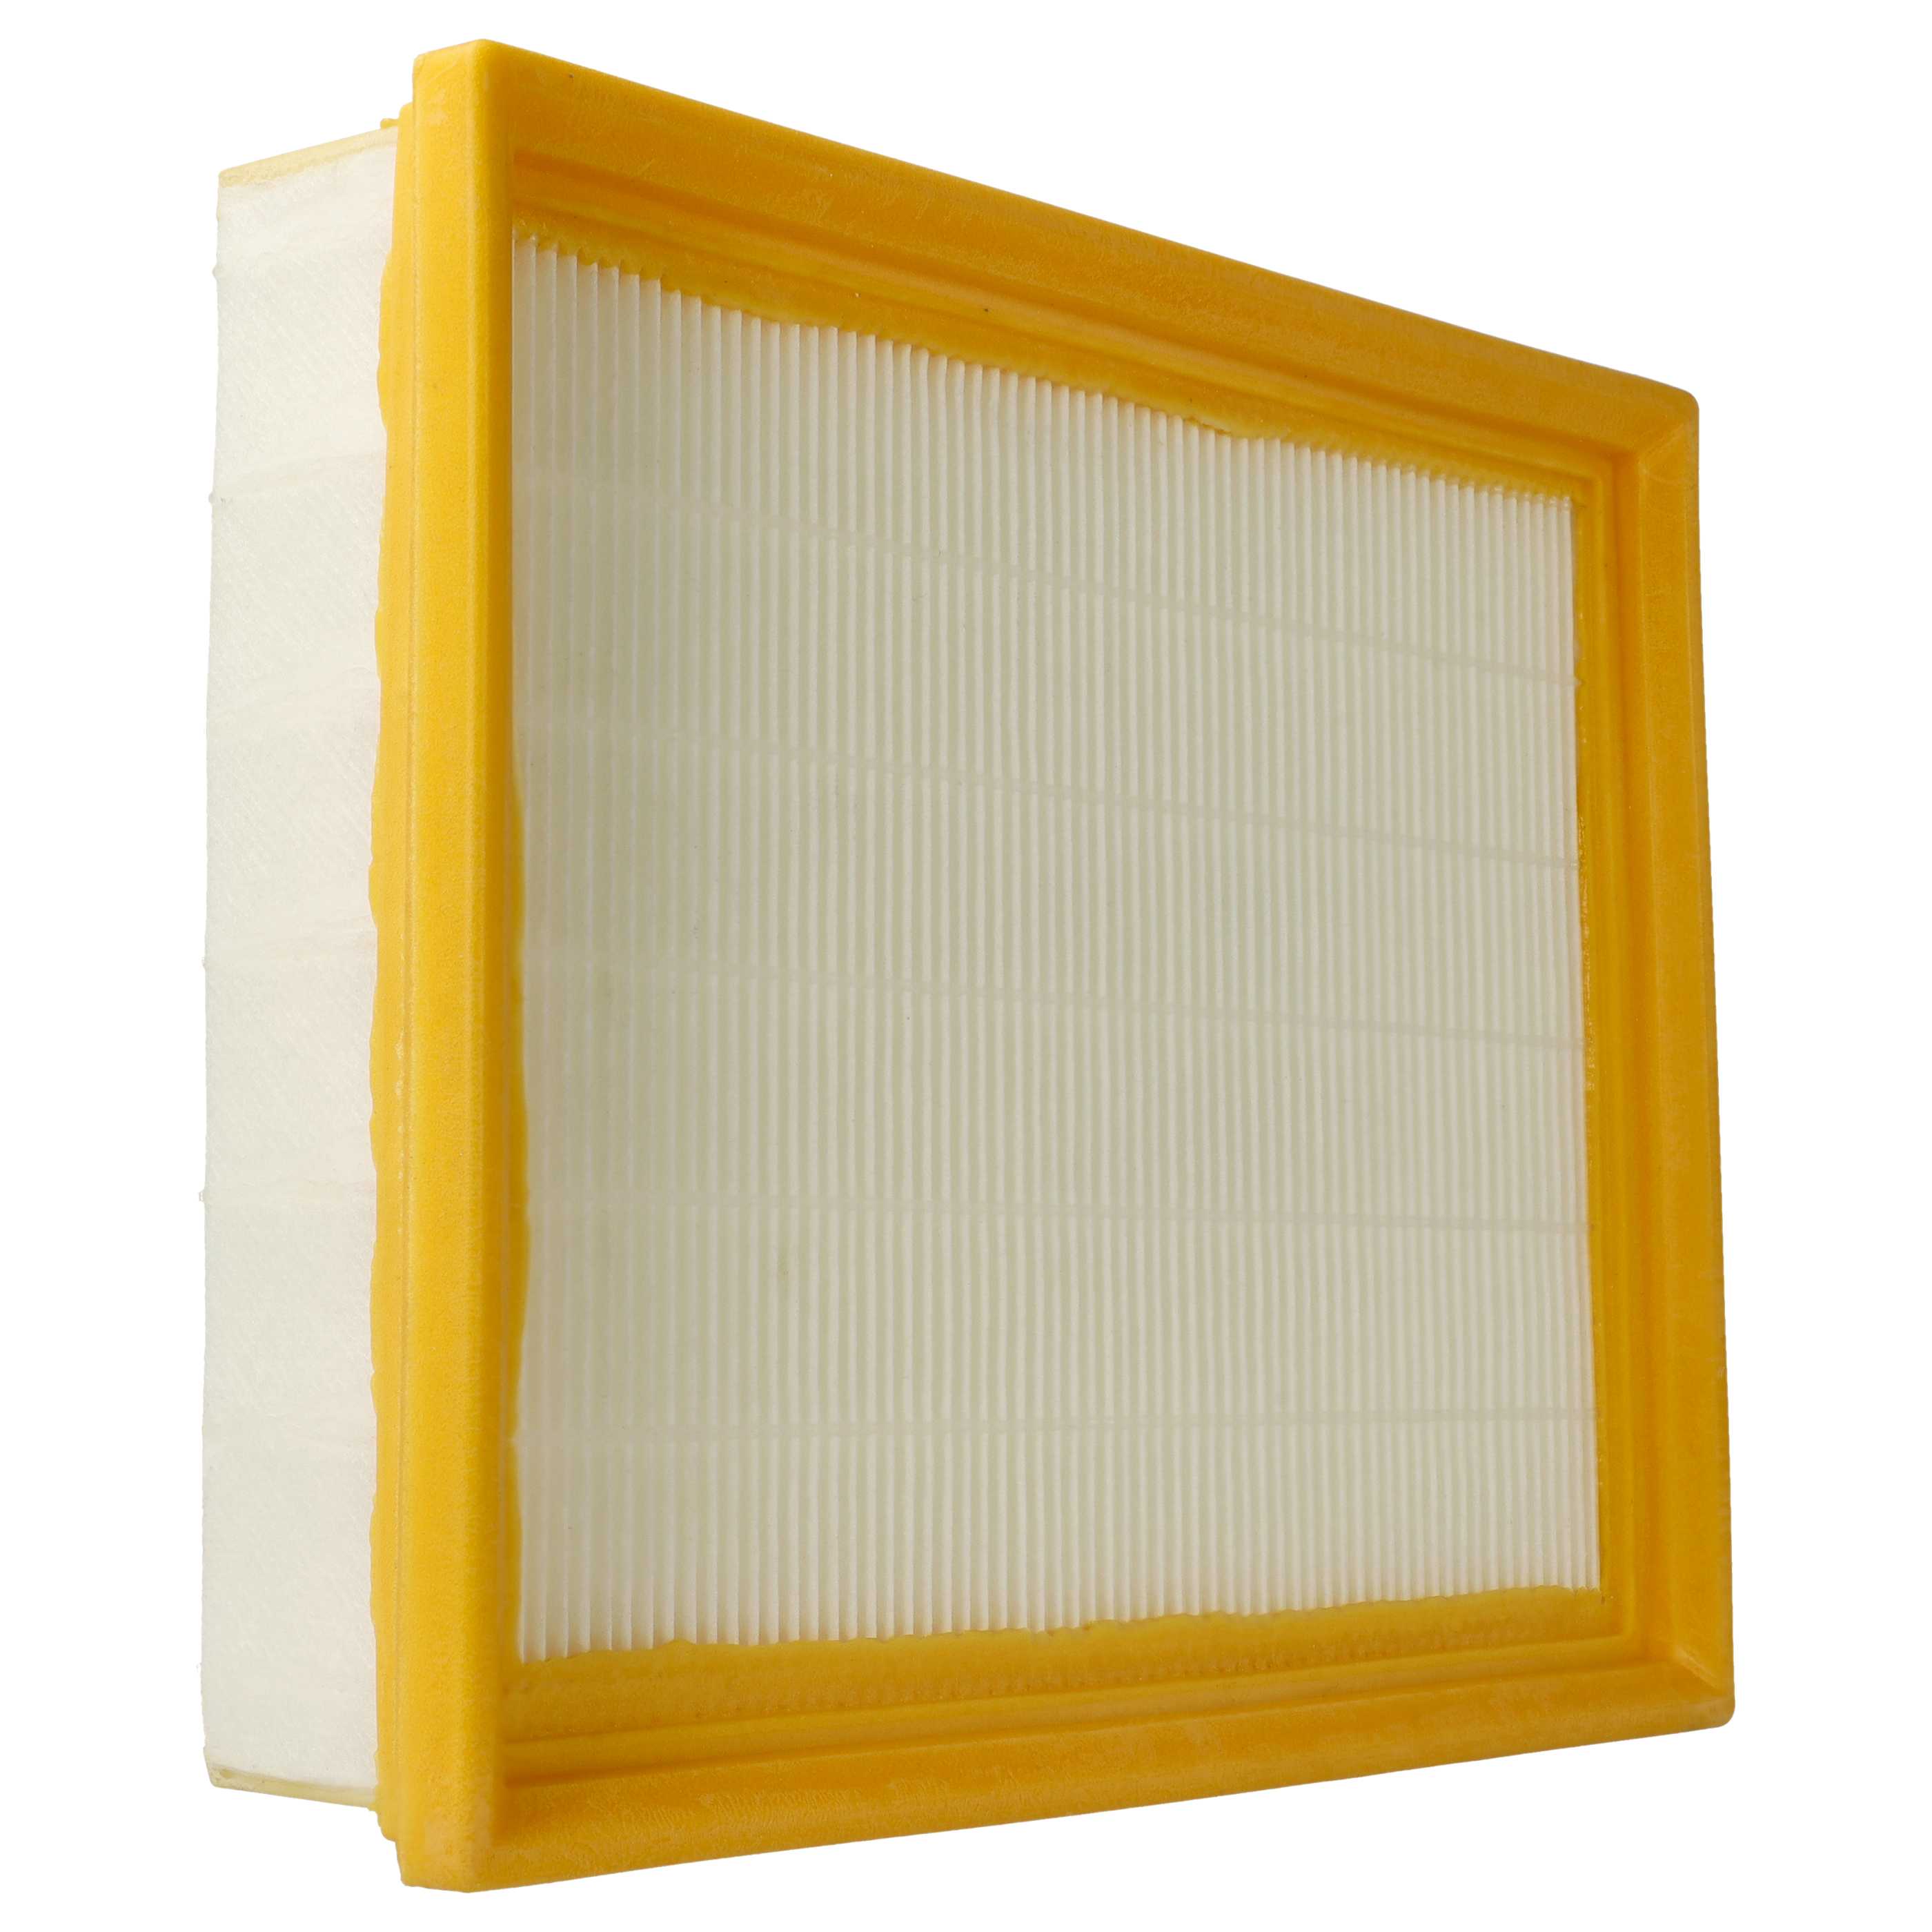 3x Filtro per aspirapolvere Festool CTL 26 E AC, CTL 36 E AC - filtro HEPA, bianco / giallo